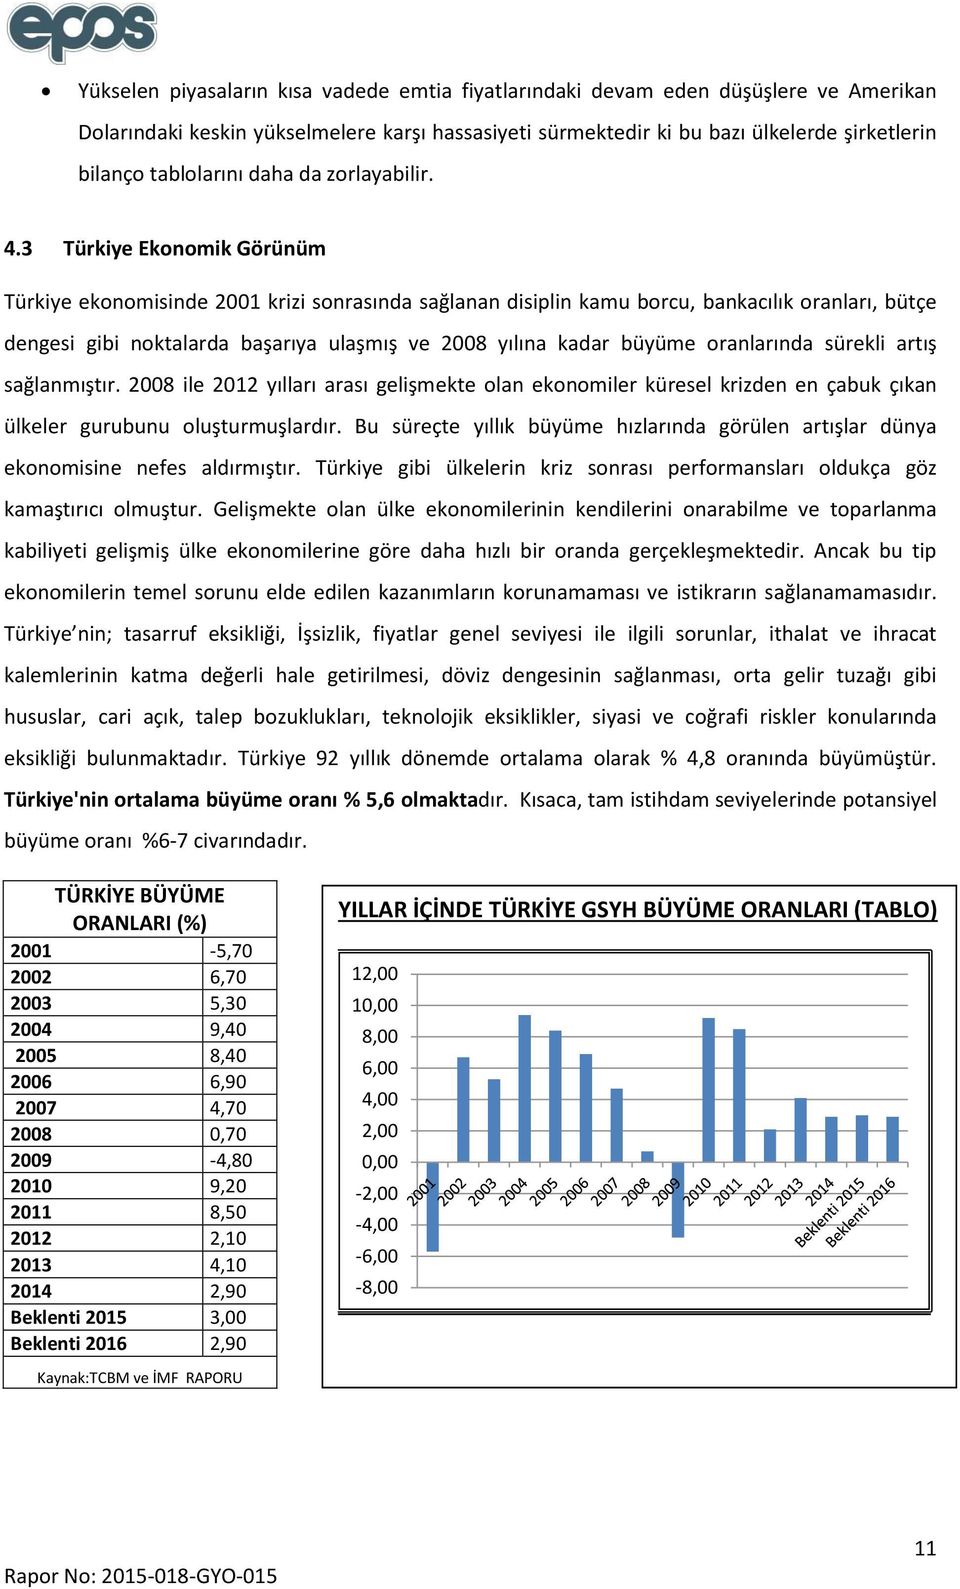 3 Türkiye Ekonomik Görünüm Türkiye ekonomisinde 2001 krizi sonrasında sağlanan disiplin kamu borcu, bankacılık oranları, bütçe dengesi gibi noktalarda başarıya ulaşmış ve 2008 yılına kadar büyüme